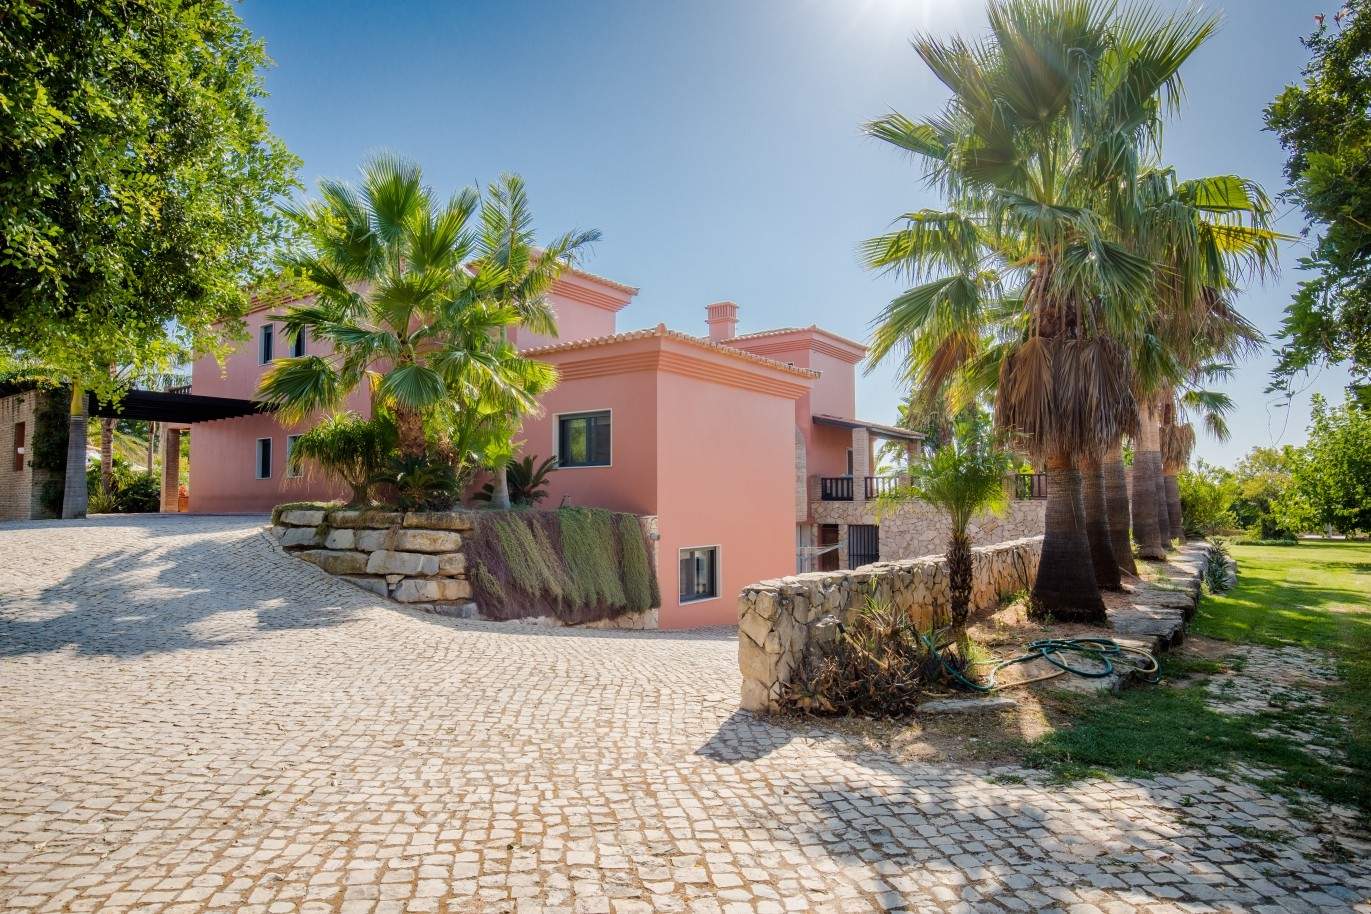 Venda de luxuosa moradia com piscina, perto do mar, Quarteira, Algarve_67364